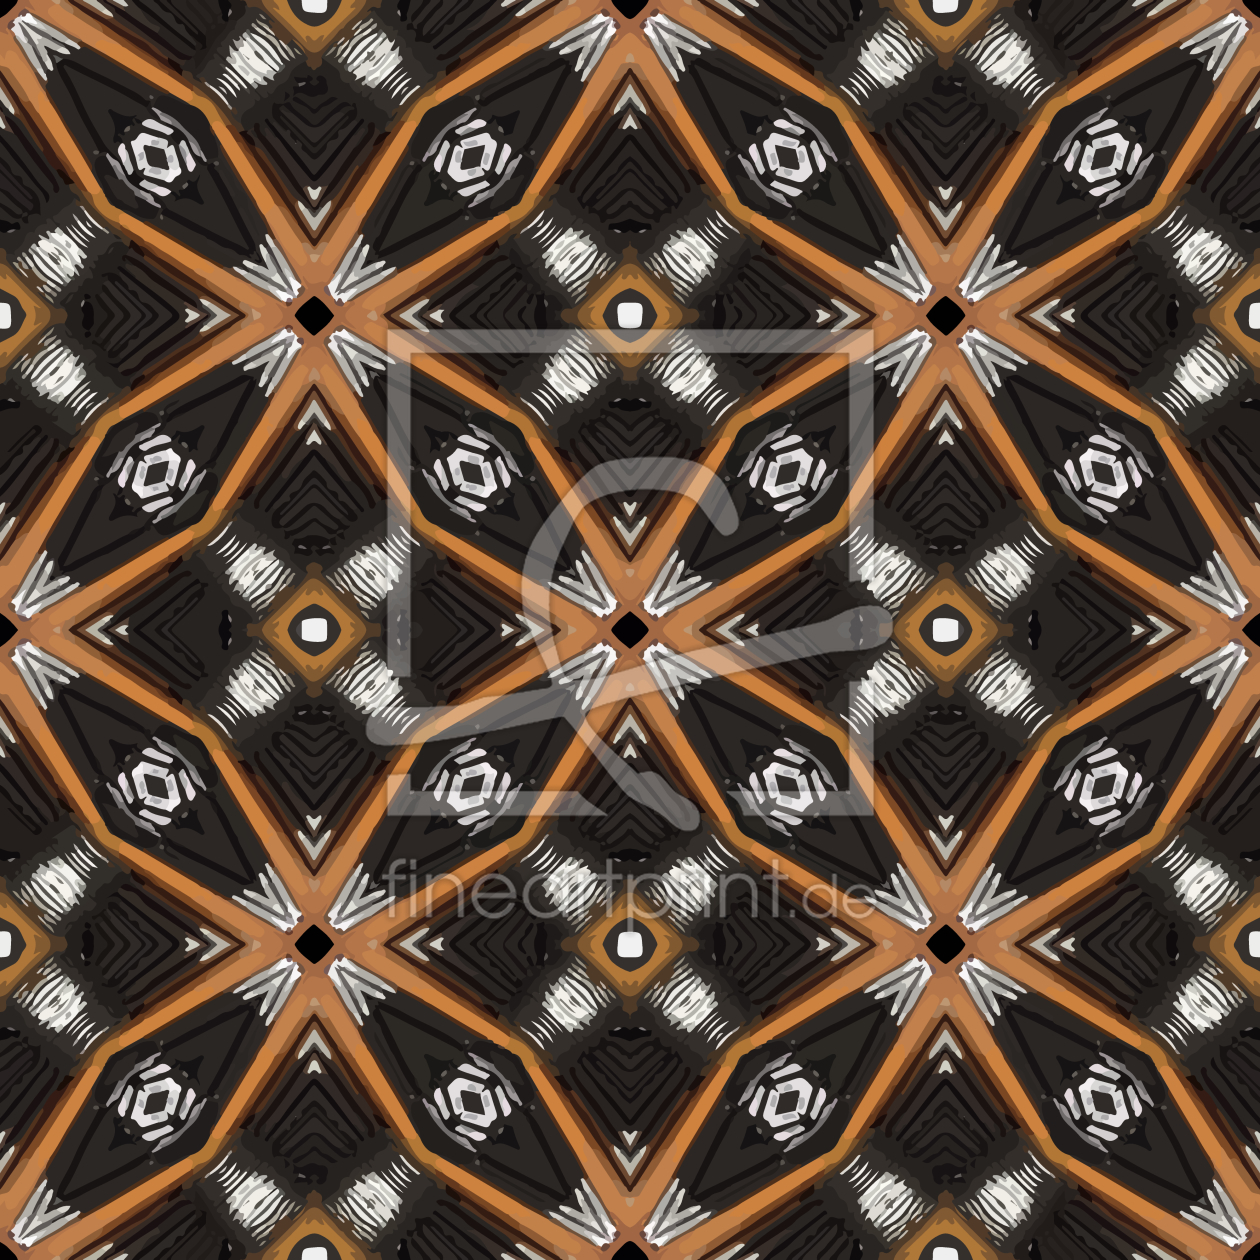 Bild-Nr.: 9010876 Kreise treffen Sterne erstellt von patterndesigns-com